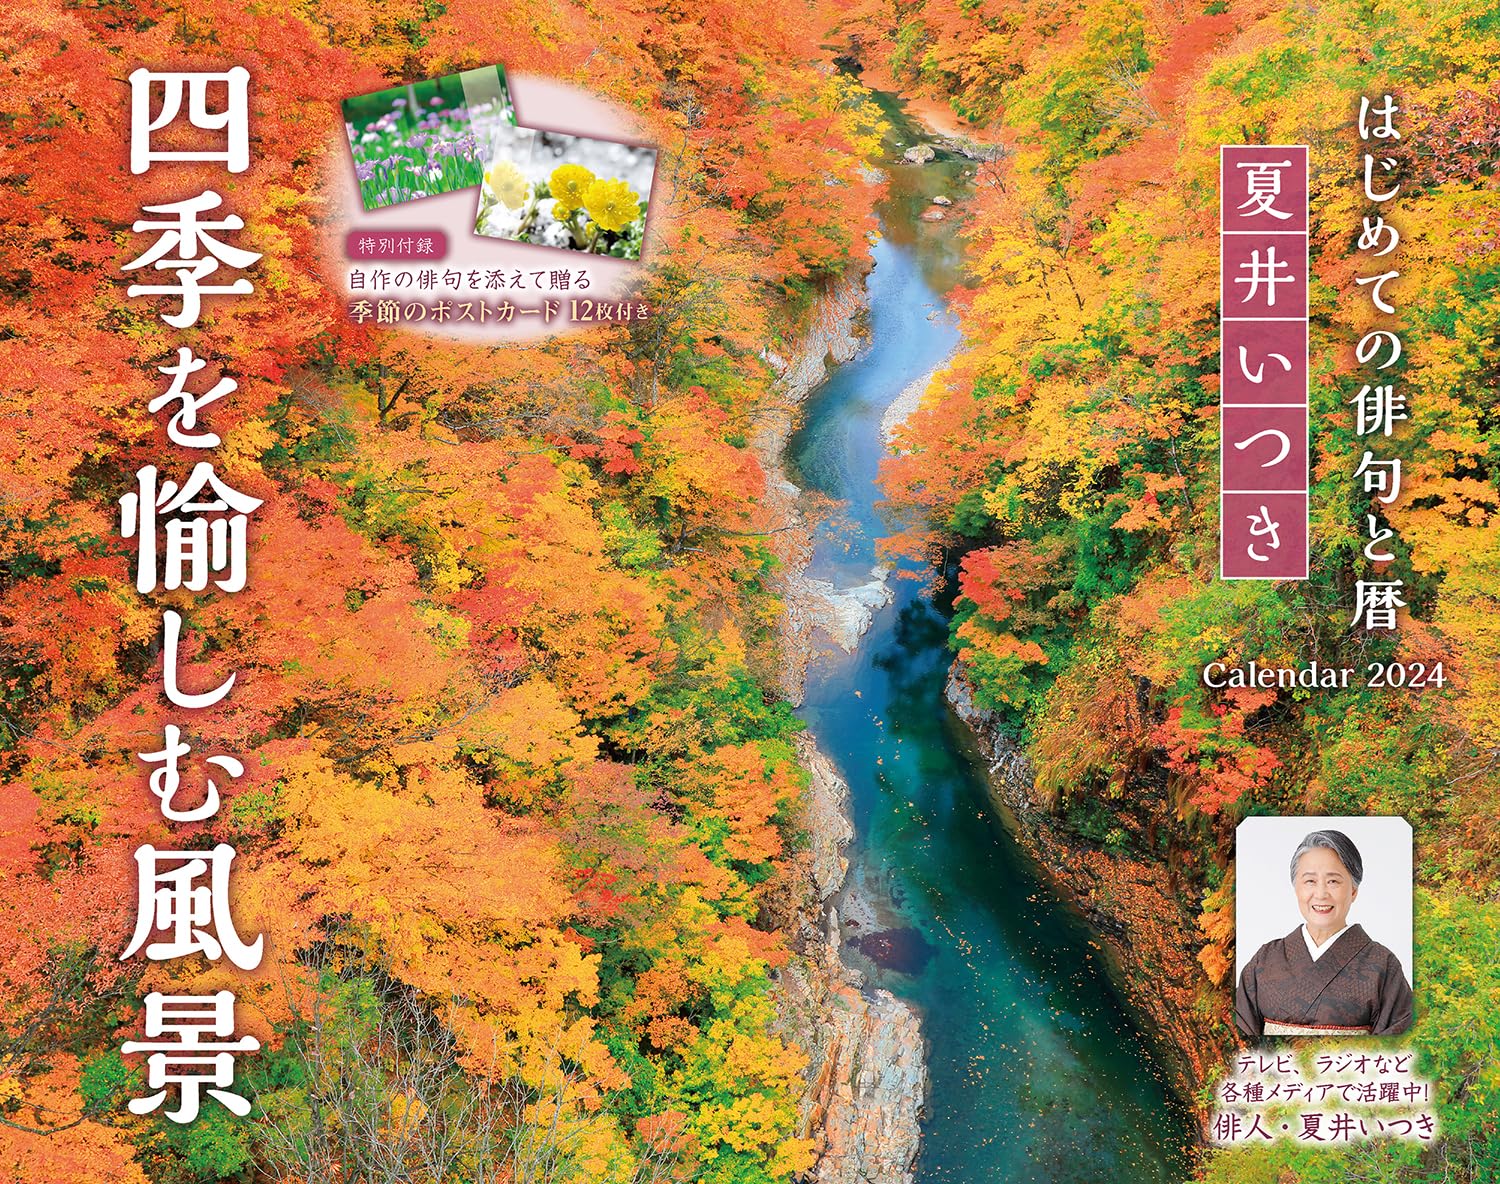 夏井いつき 四季を愉しむ風景 カレンダー (インプレスカレンダー2024)